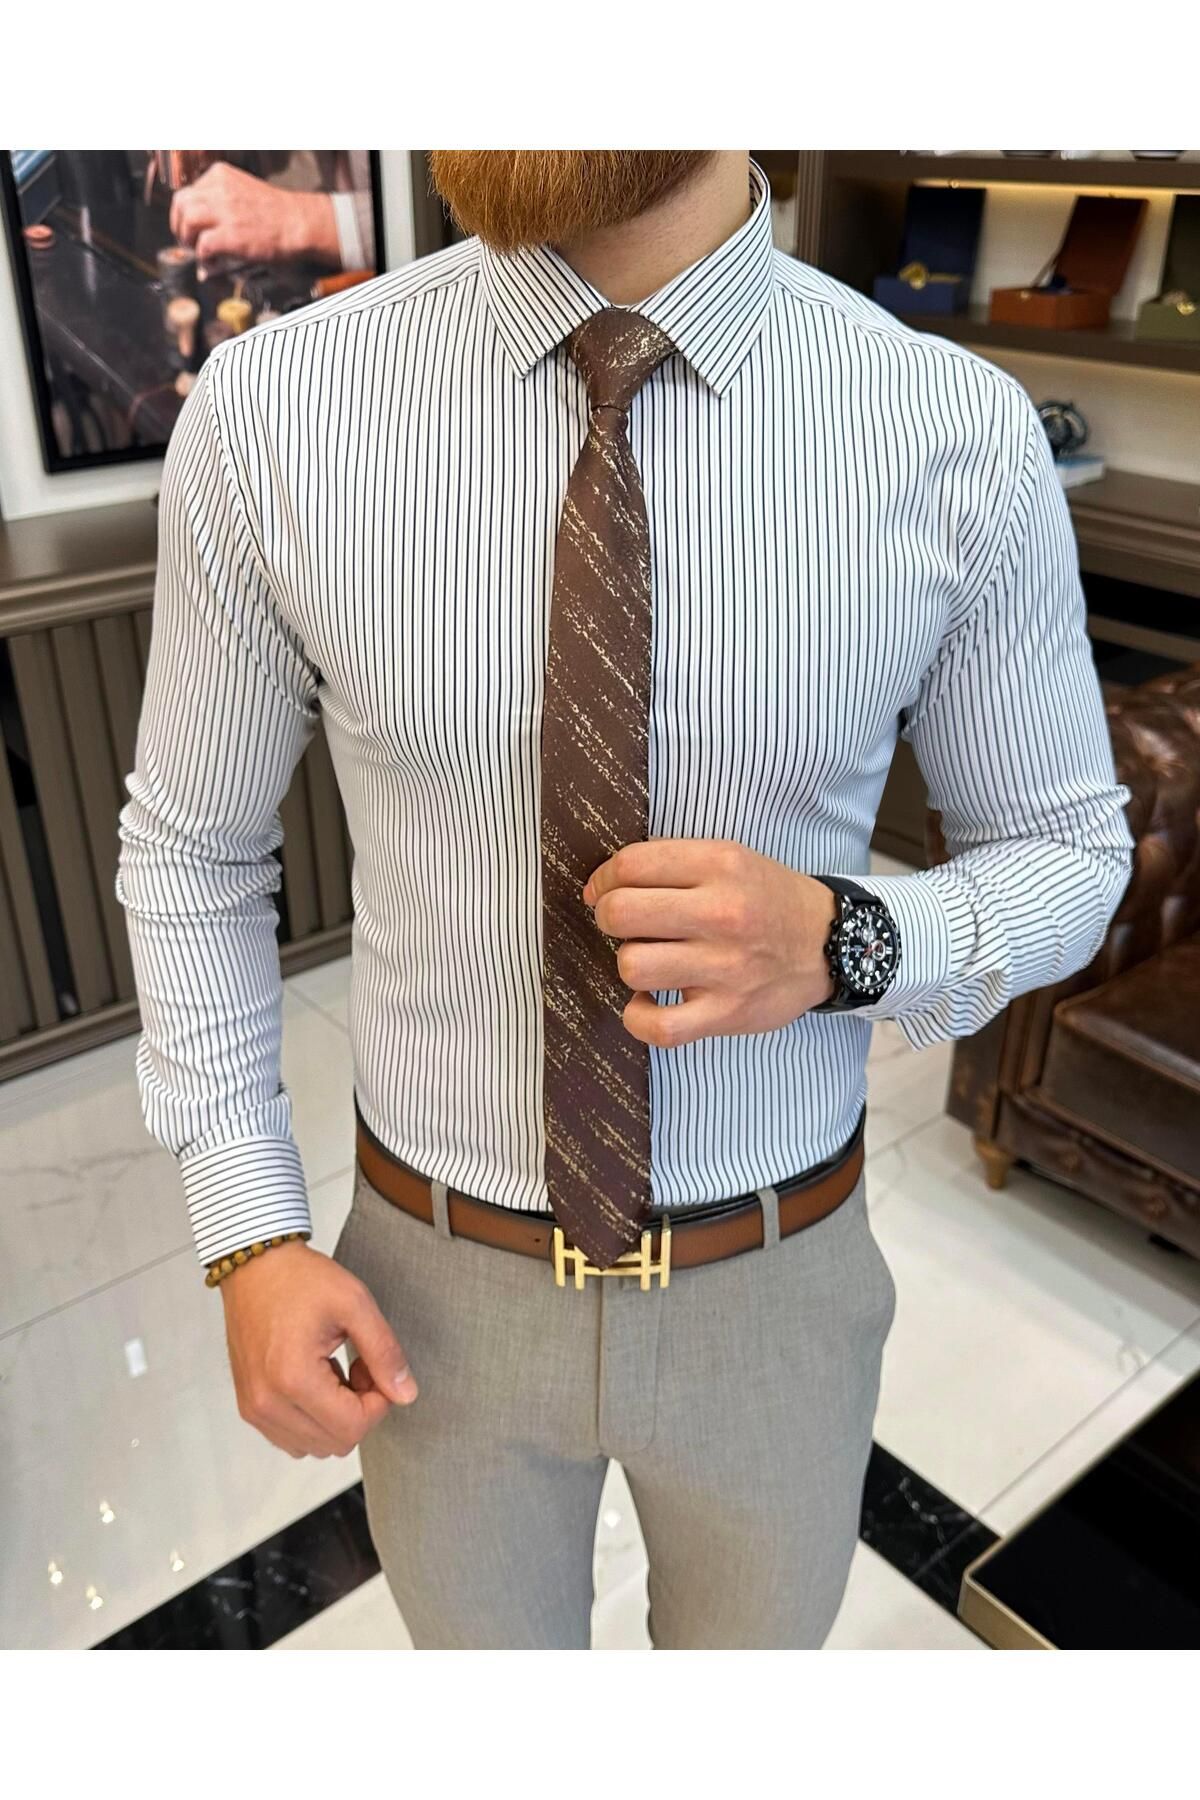 TerziAdemAltun İtalyan stil çizgili kravat yaka erkek gömlek lacivert T11251